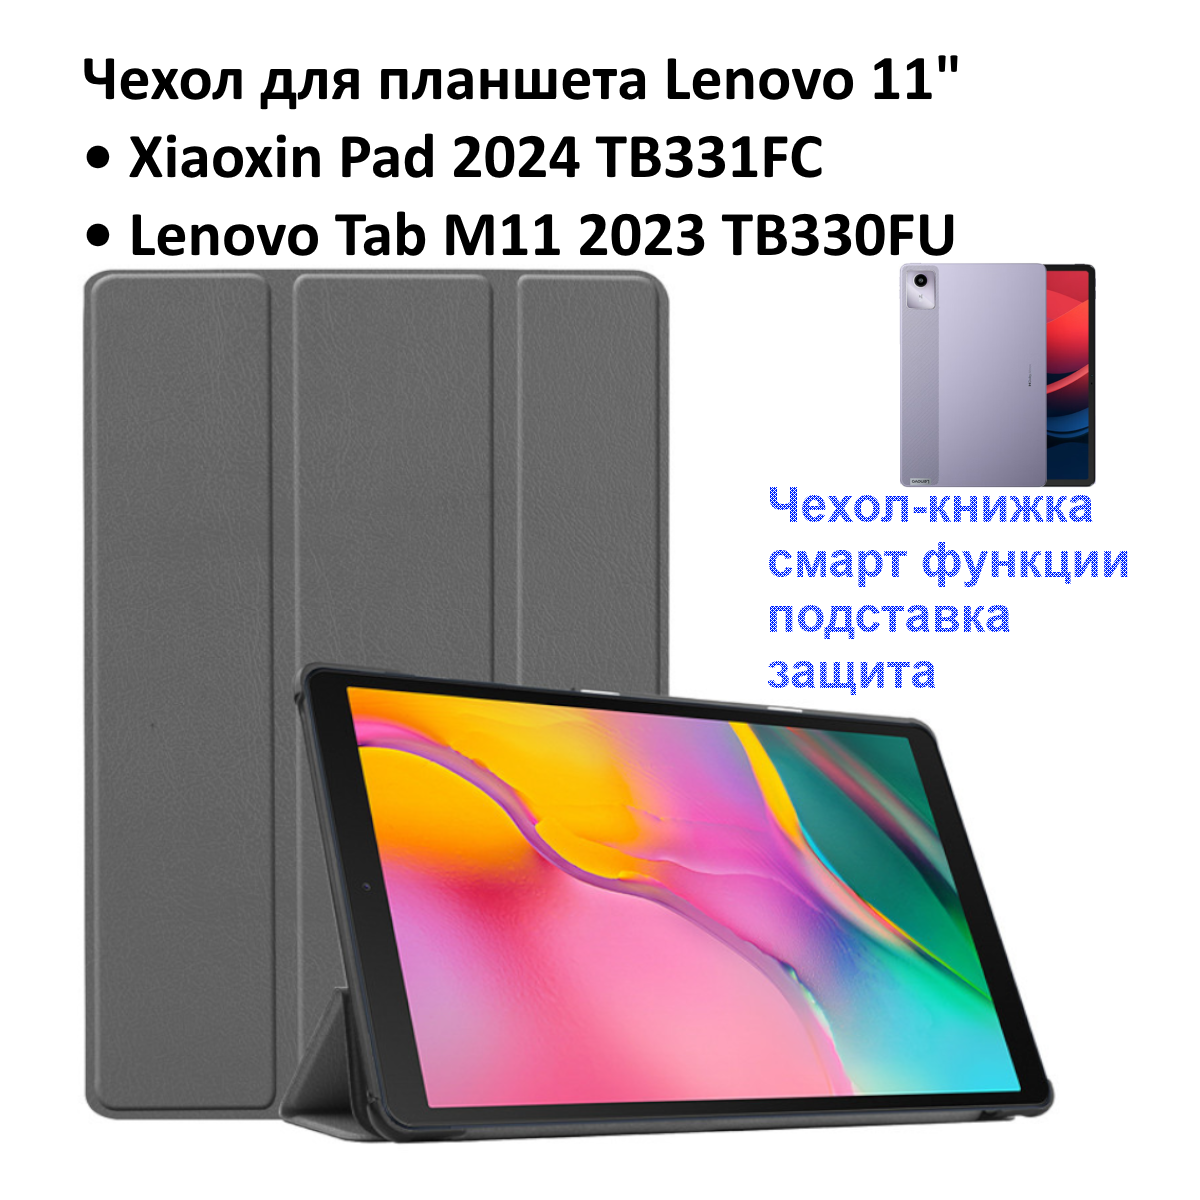 Чехол для Lenovo 11" XiaoXin Pad 2024 ( TB331FC ) / Lenovo Tab M11 2023 ( TB330FU ) серый